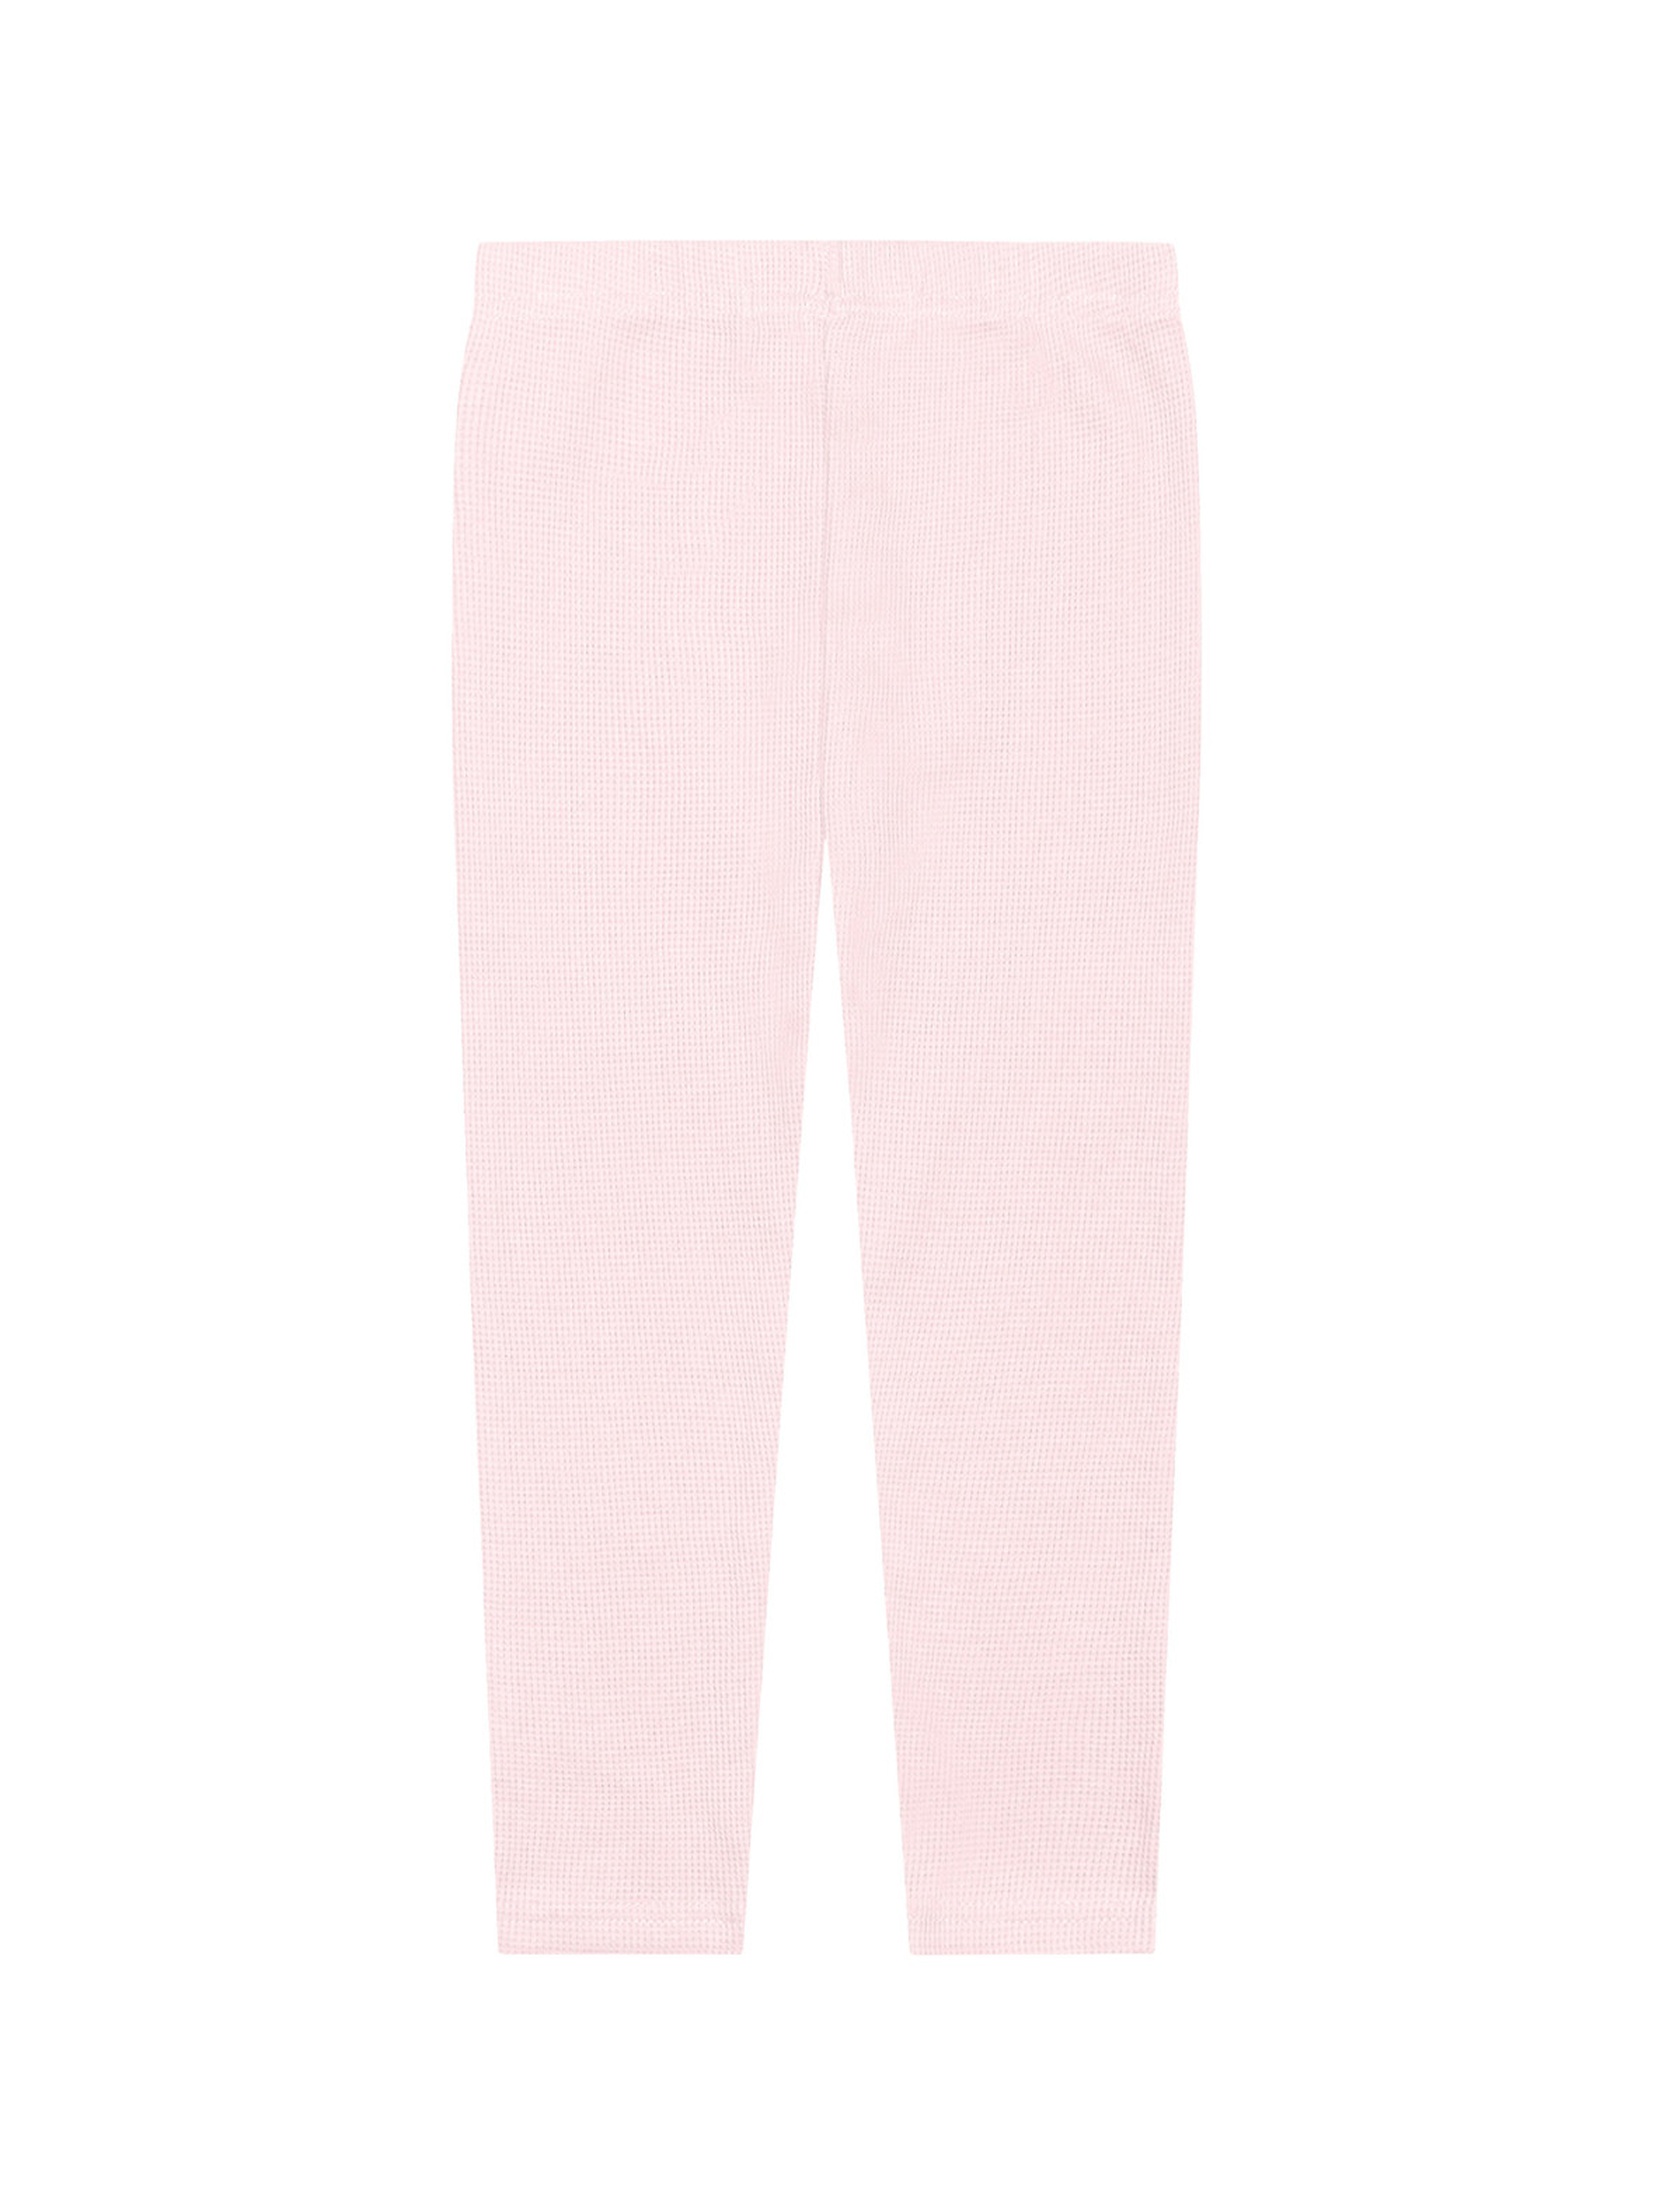 Jasno różowe legginsy dla dziewczynki